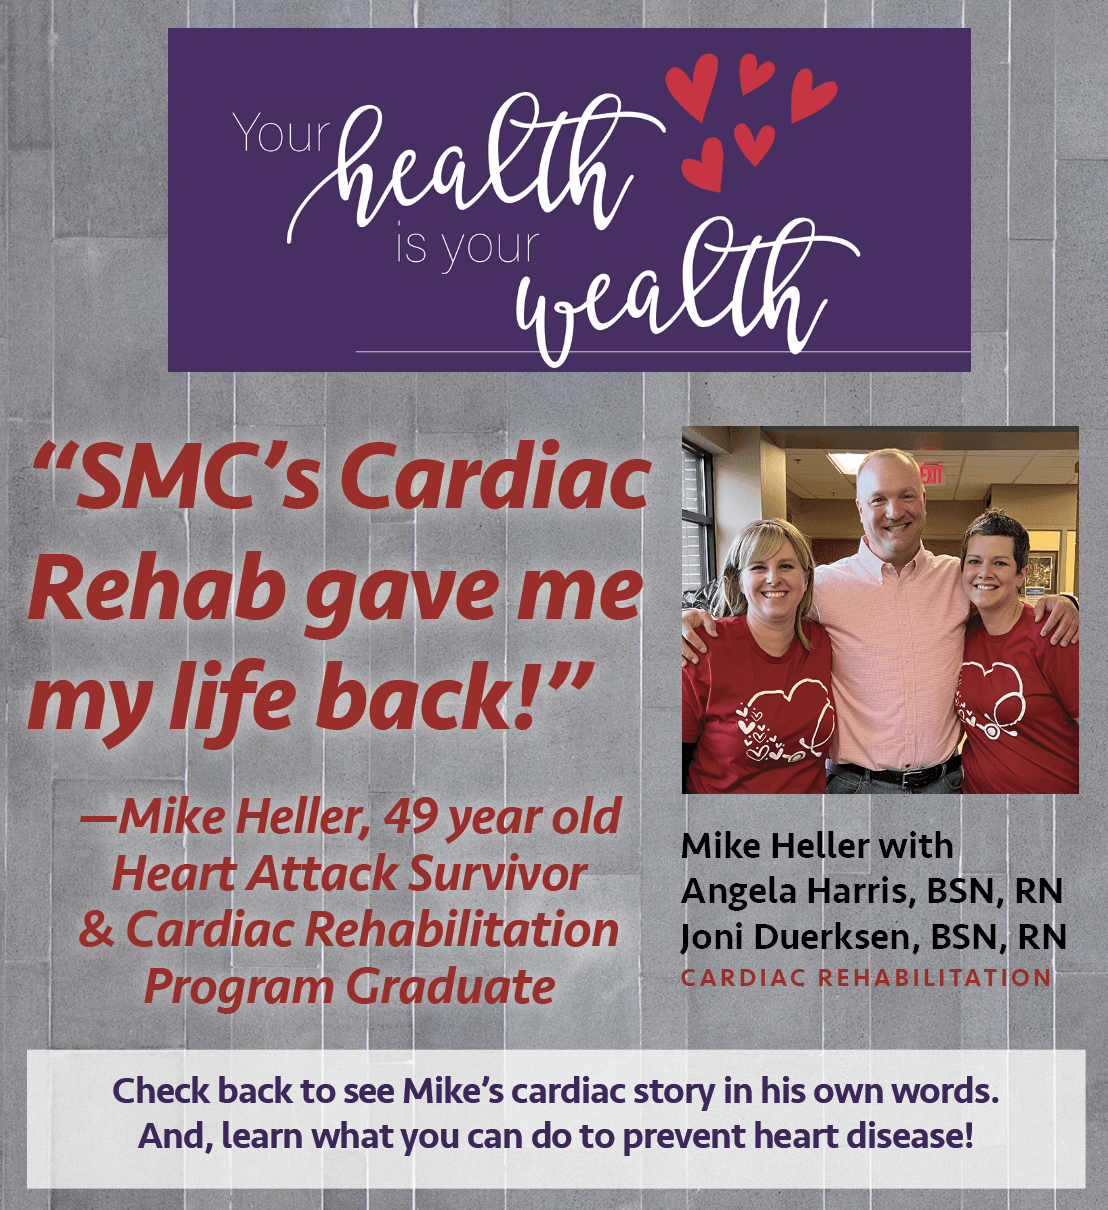 Mike Heller's Heart Scare and Cardiac Rehabilitation